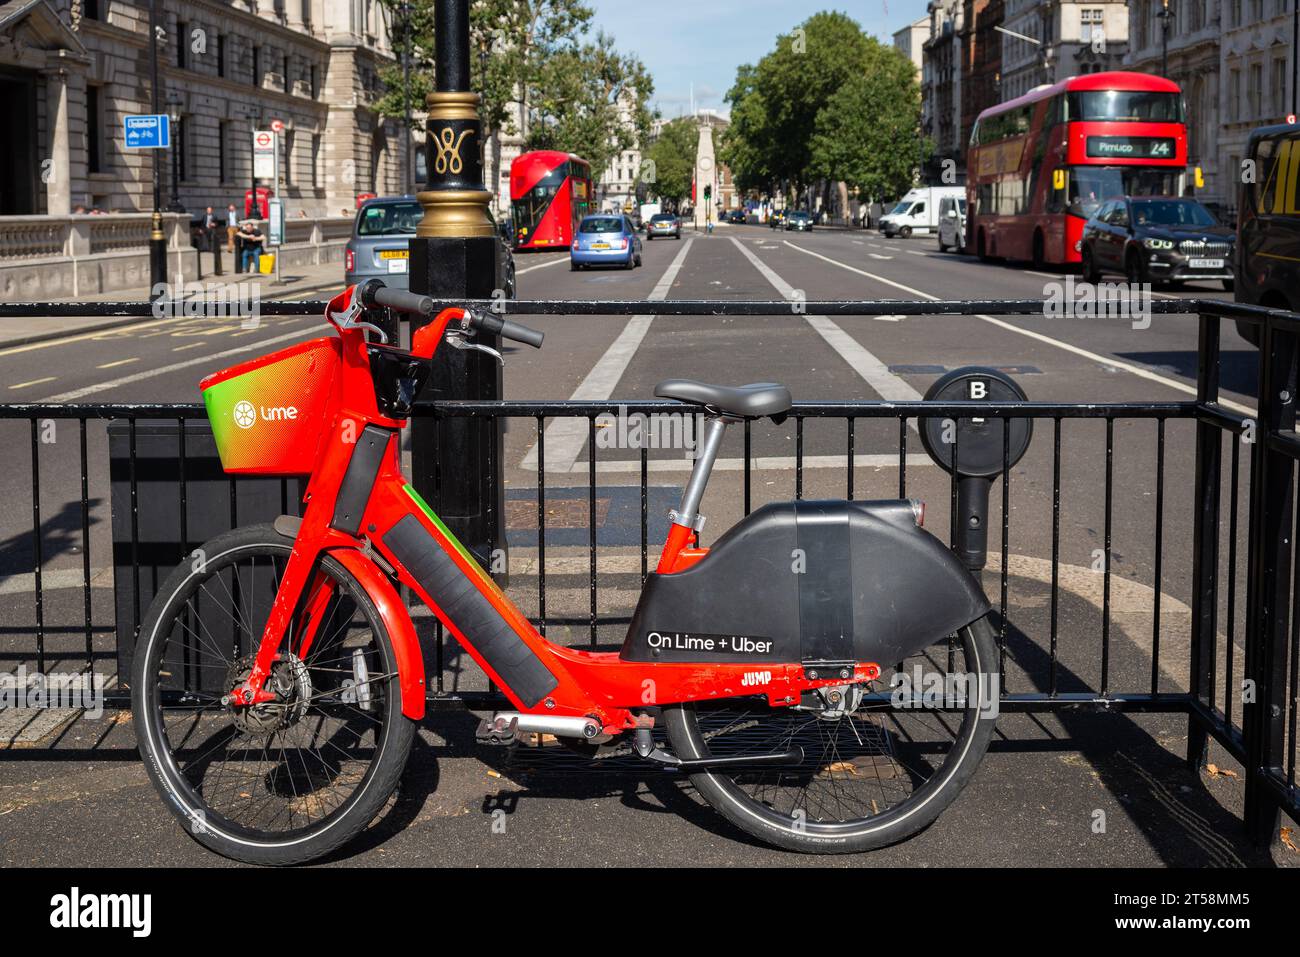 Biciclette elettriche lime Uber a noleggio, a Whitehall, Westminster, Londra, Regno Unito. Programma di noleggio biciclette pubblico nella City di Londra. Svolta a sinistra sul marciapiede centrale Foto Stock